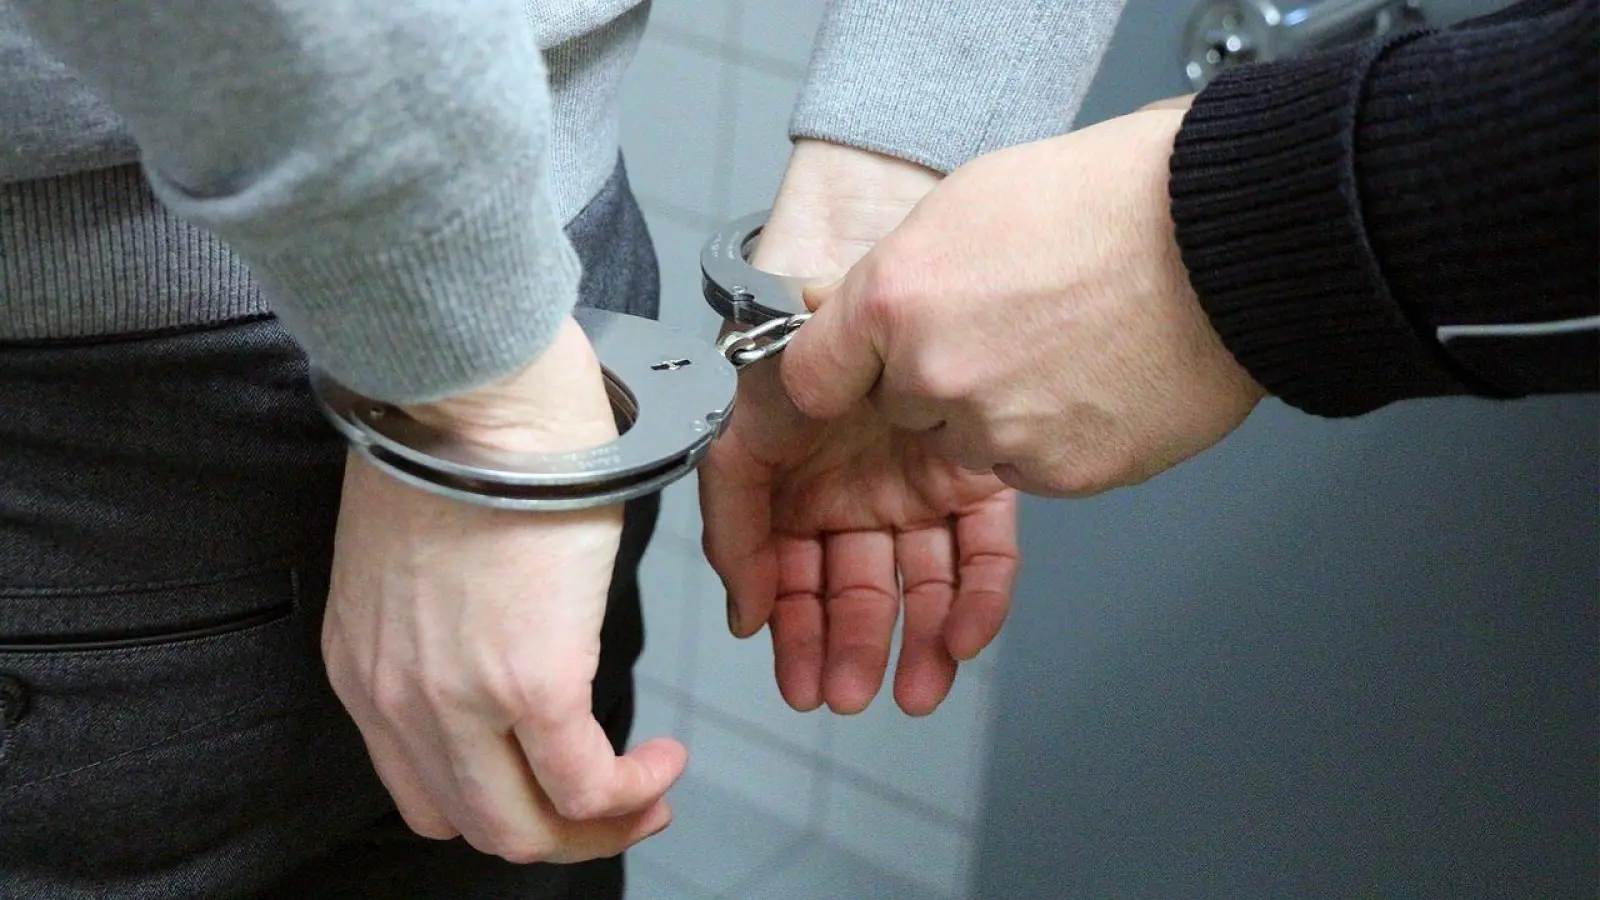 Beim Tauchscher: Rauschgifthändler festgenommen (Foto: taucha-kompakt.de)